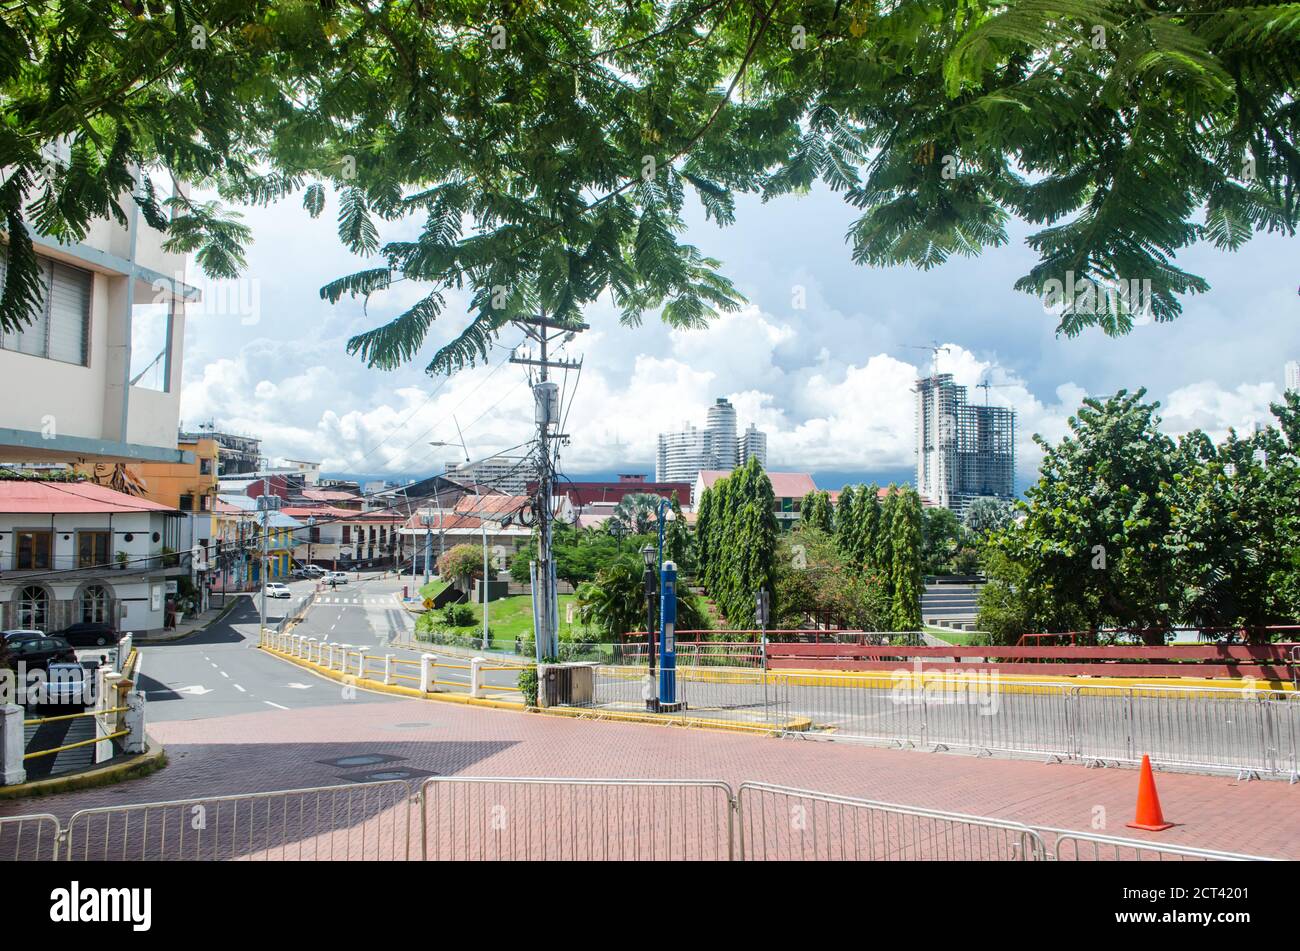 Ingresso al casco Antiguo, un caratteristico quartiere di Panama City ora silenzioso a causa degli effetti della pandemia Foto Stock